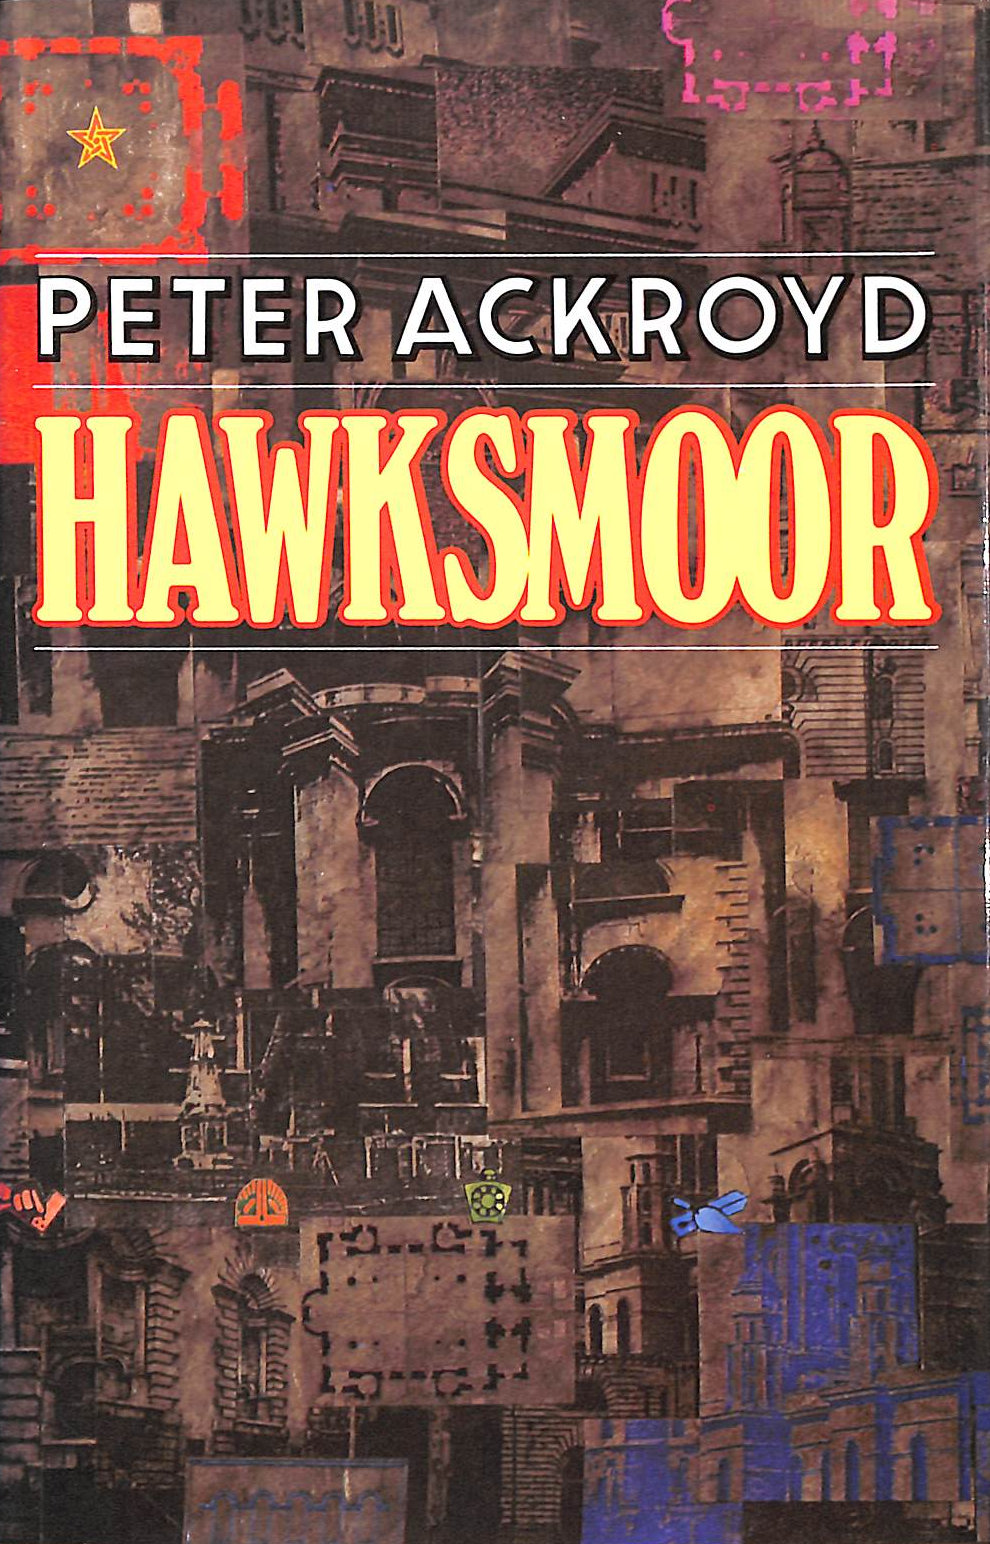 ACKROYD, PETER - Hawksmoor